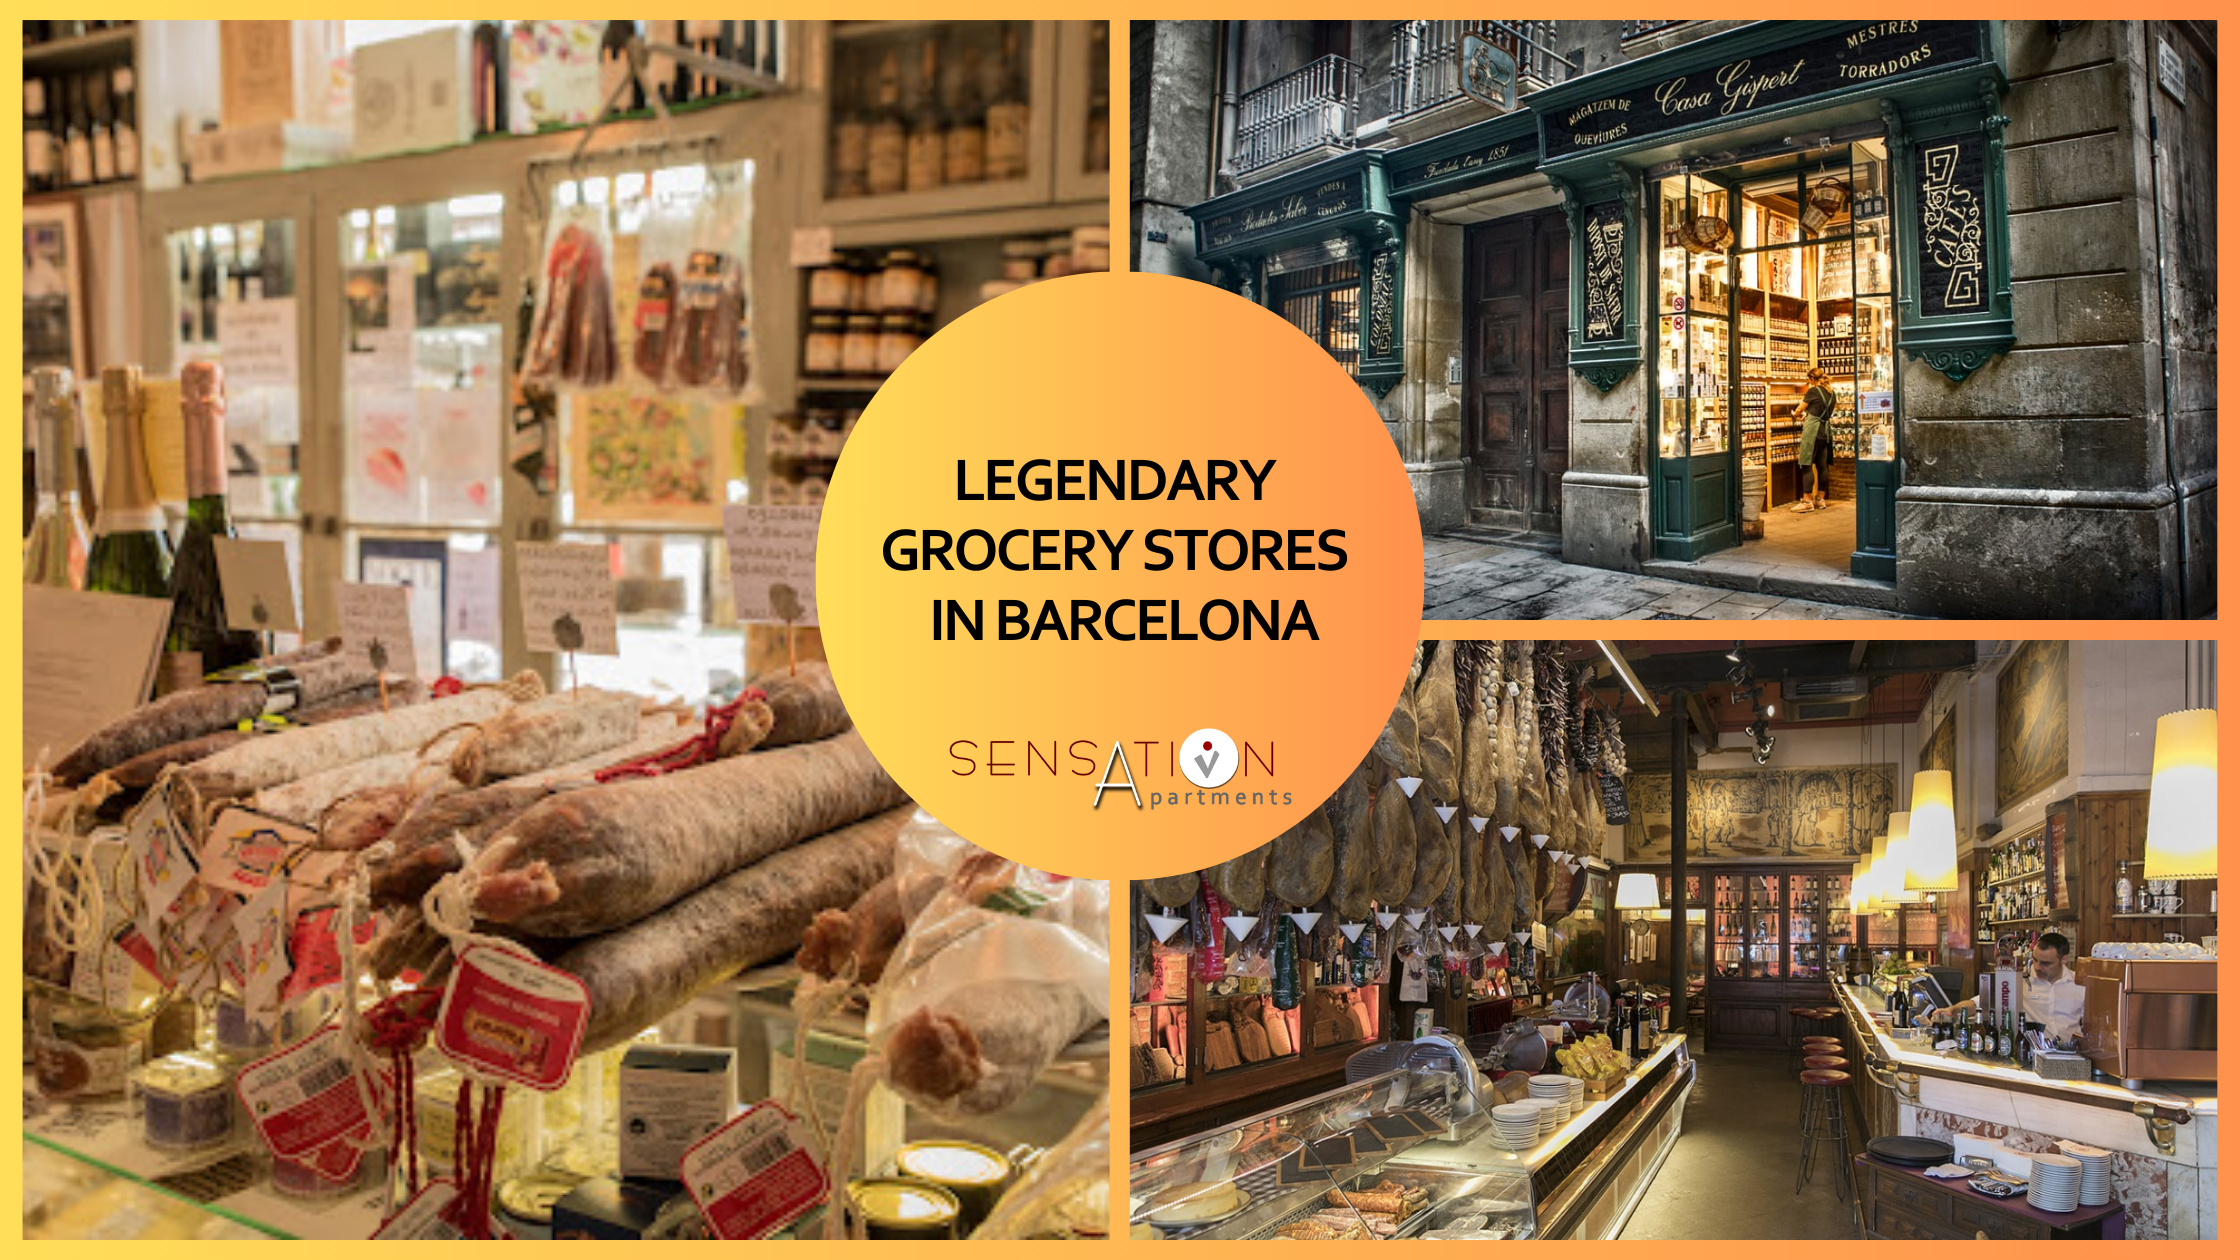 un collage de fotos de tiendas de comestibles legendarias en barcelona